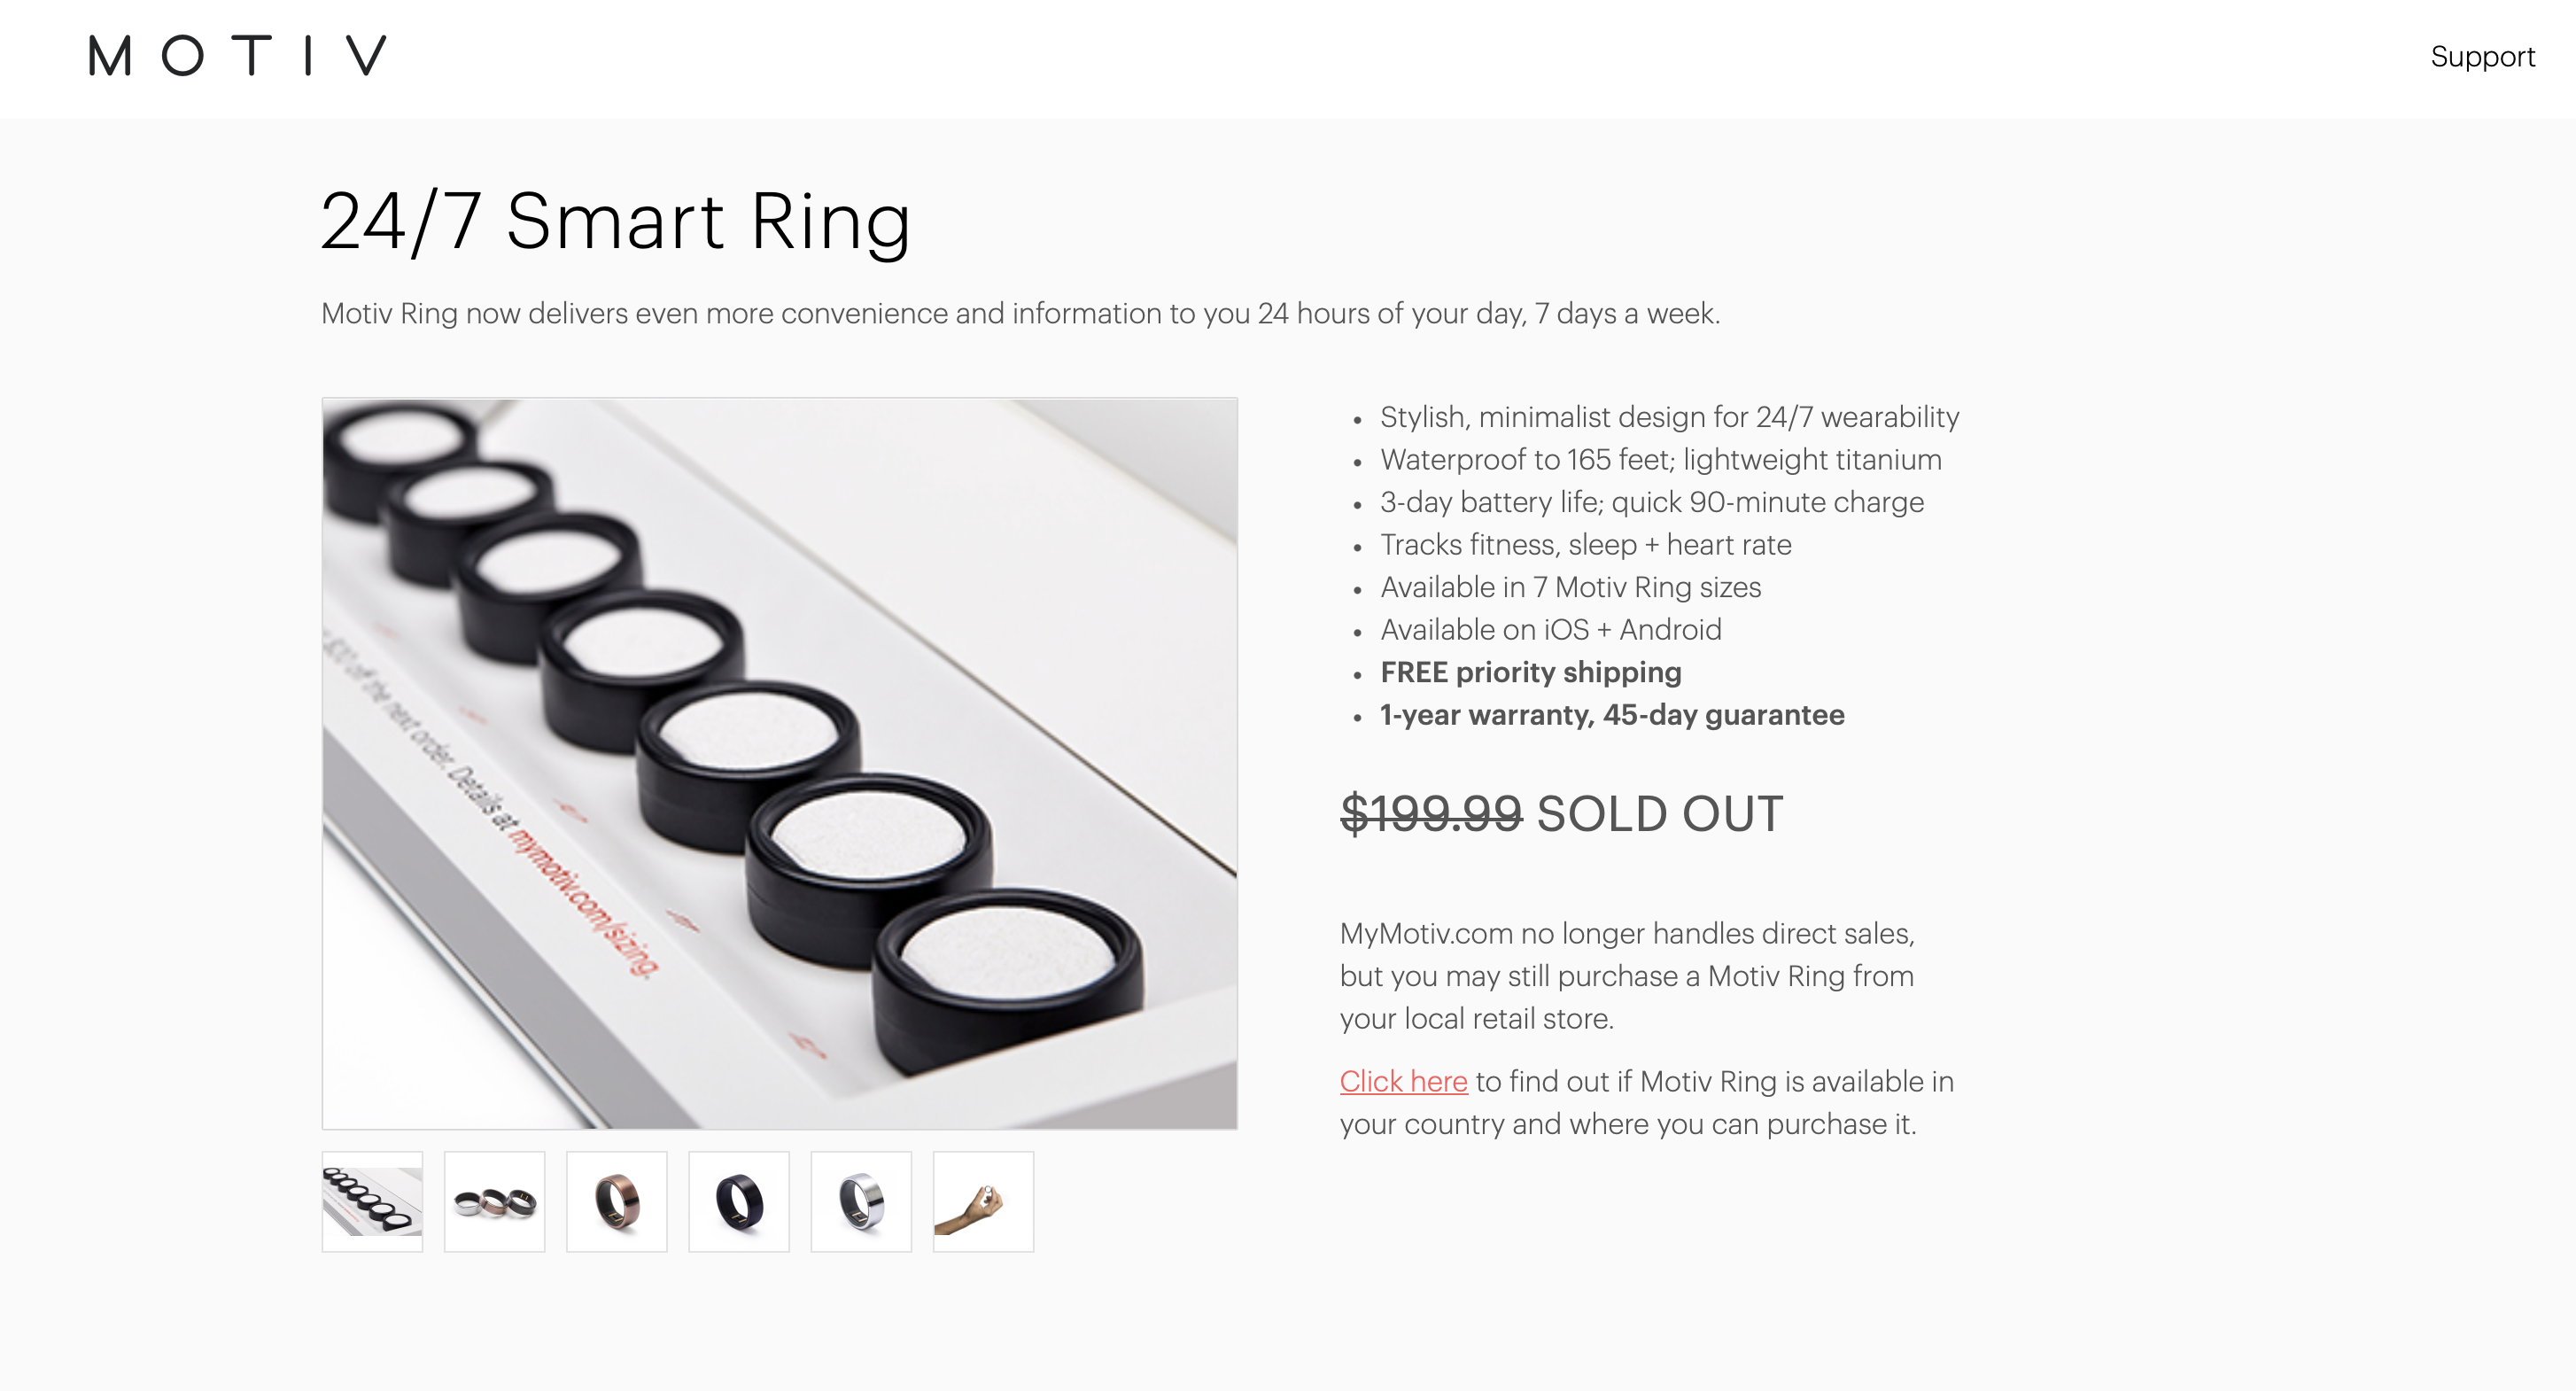 Motiv Ring Pricing